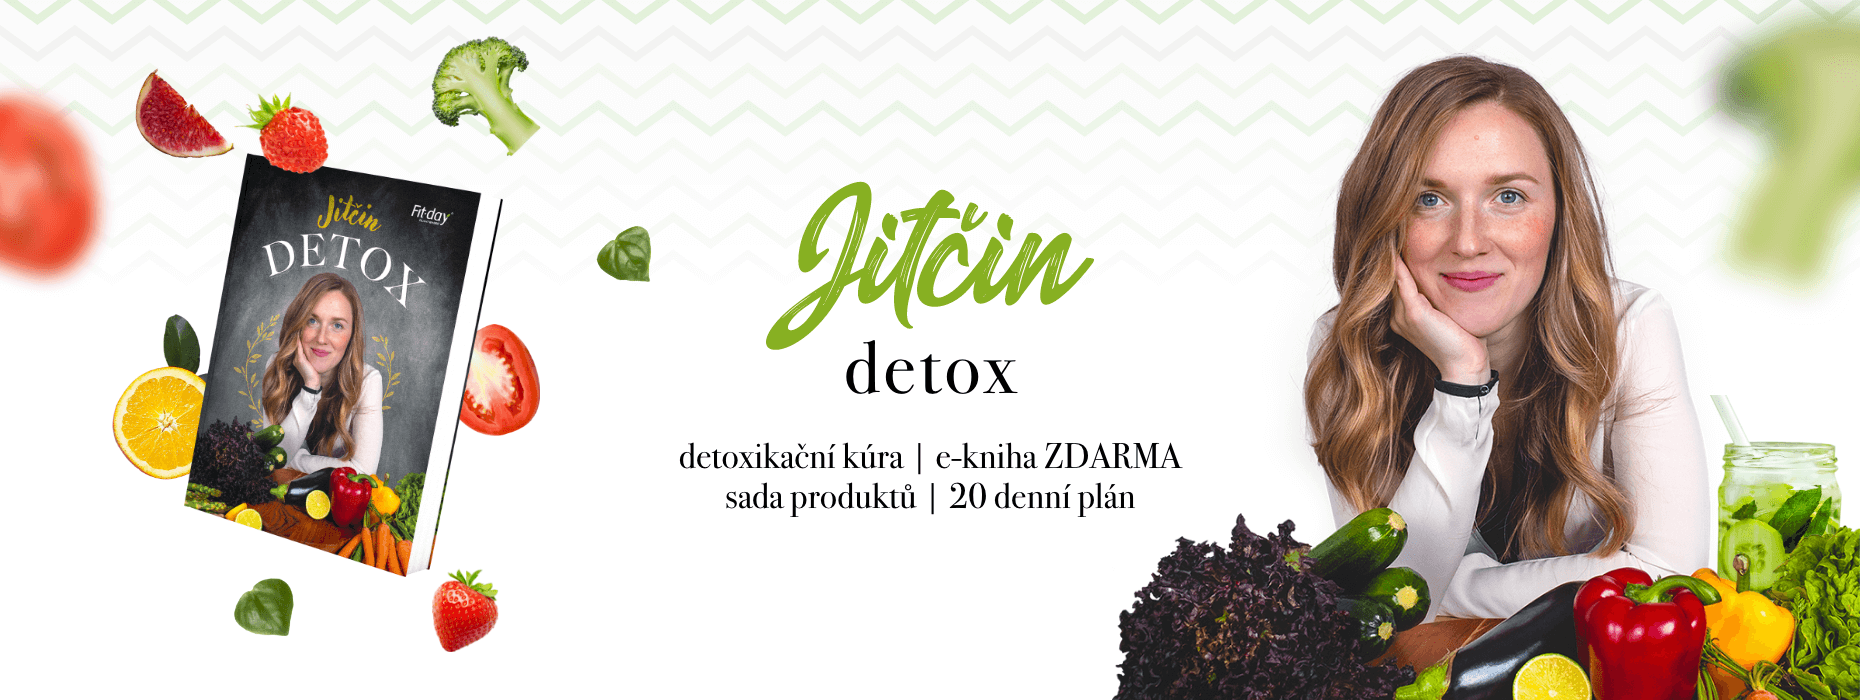 jitcin_detox_1860x700_cz